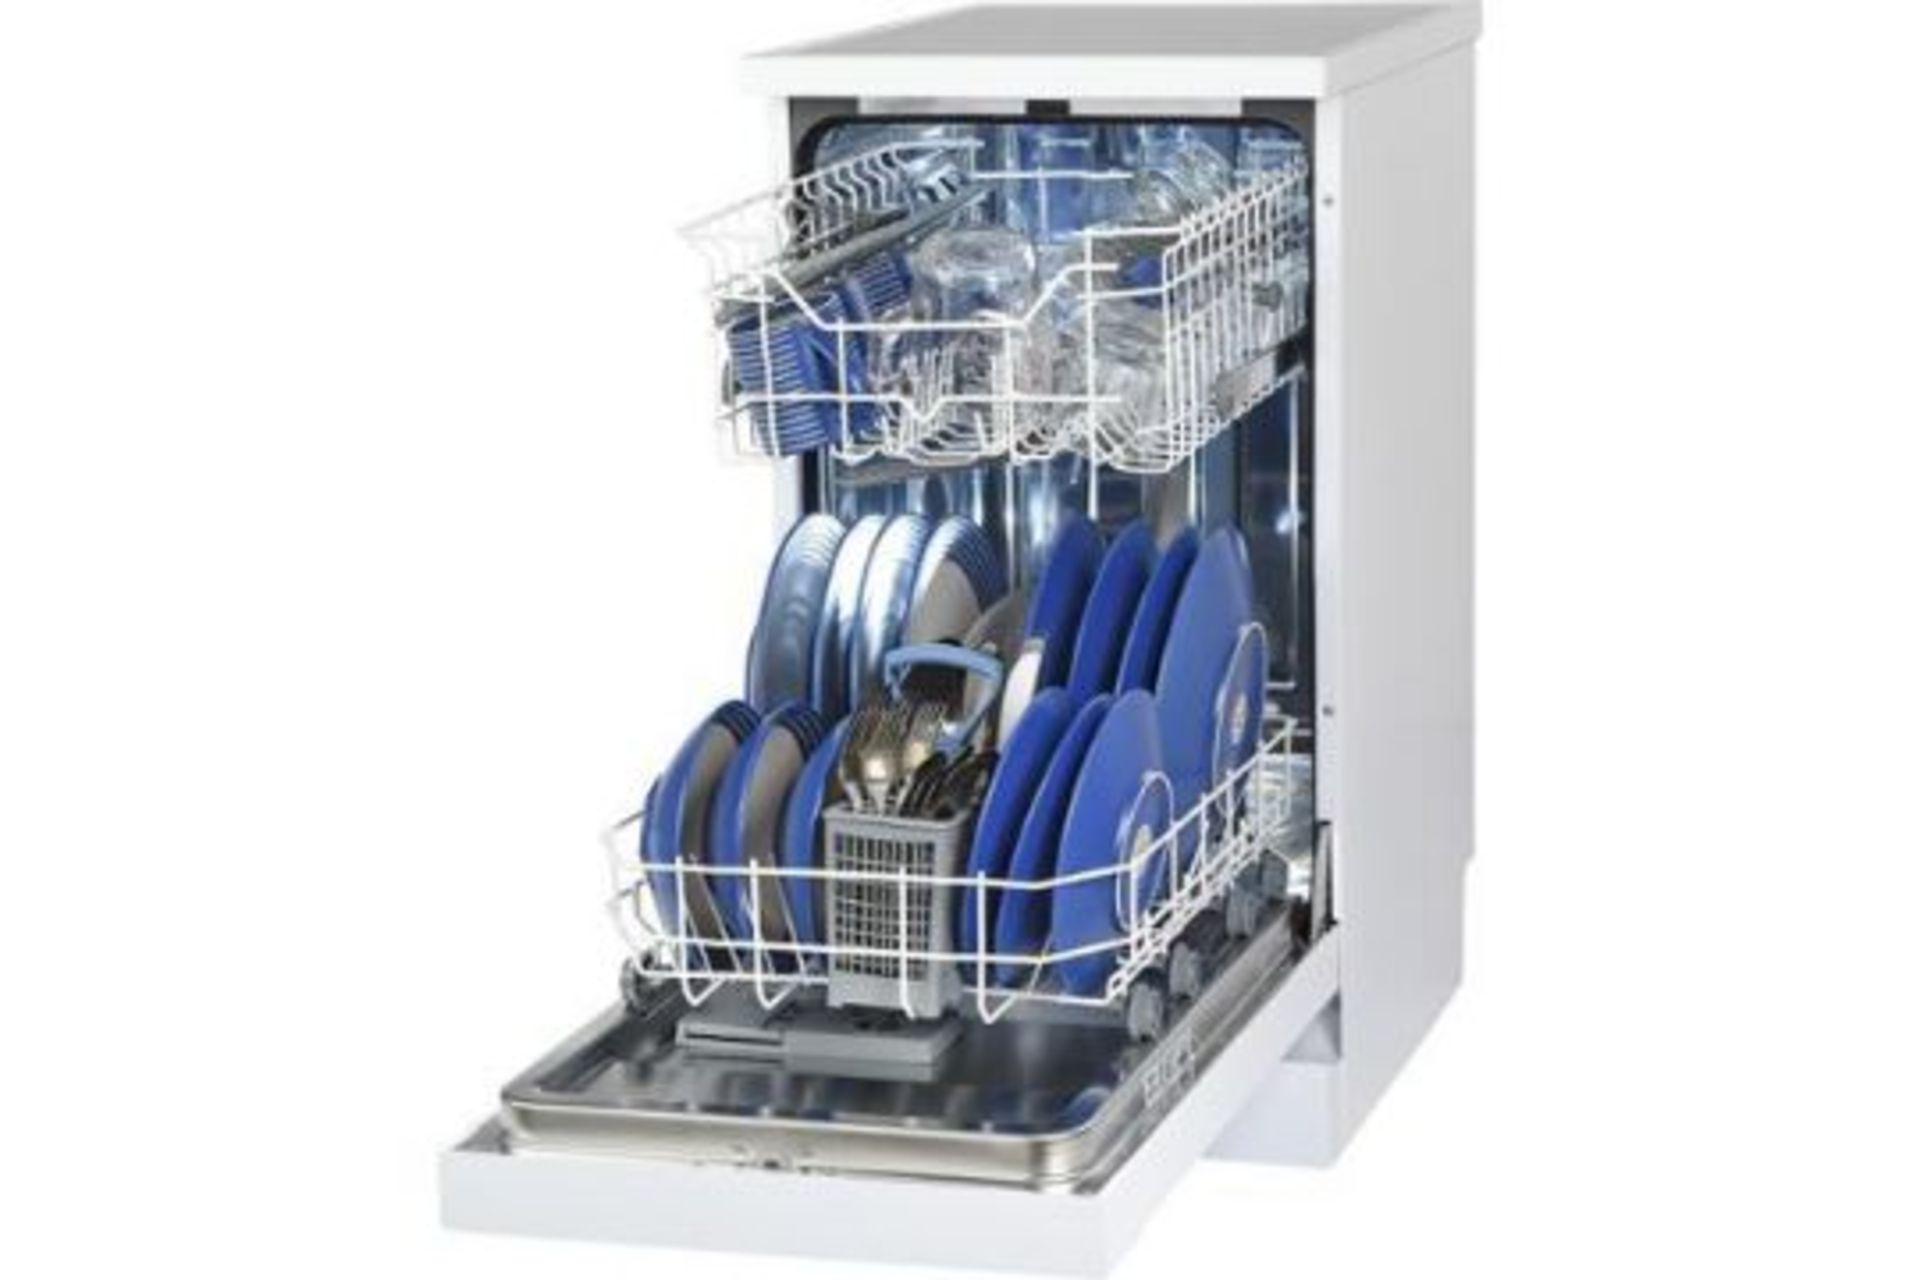 Bush BFSLNB9W Slimline Dishwasher - White - ARGOS RRP £190 - Image 2 of 4